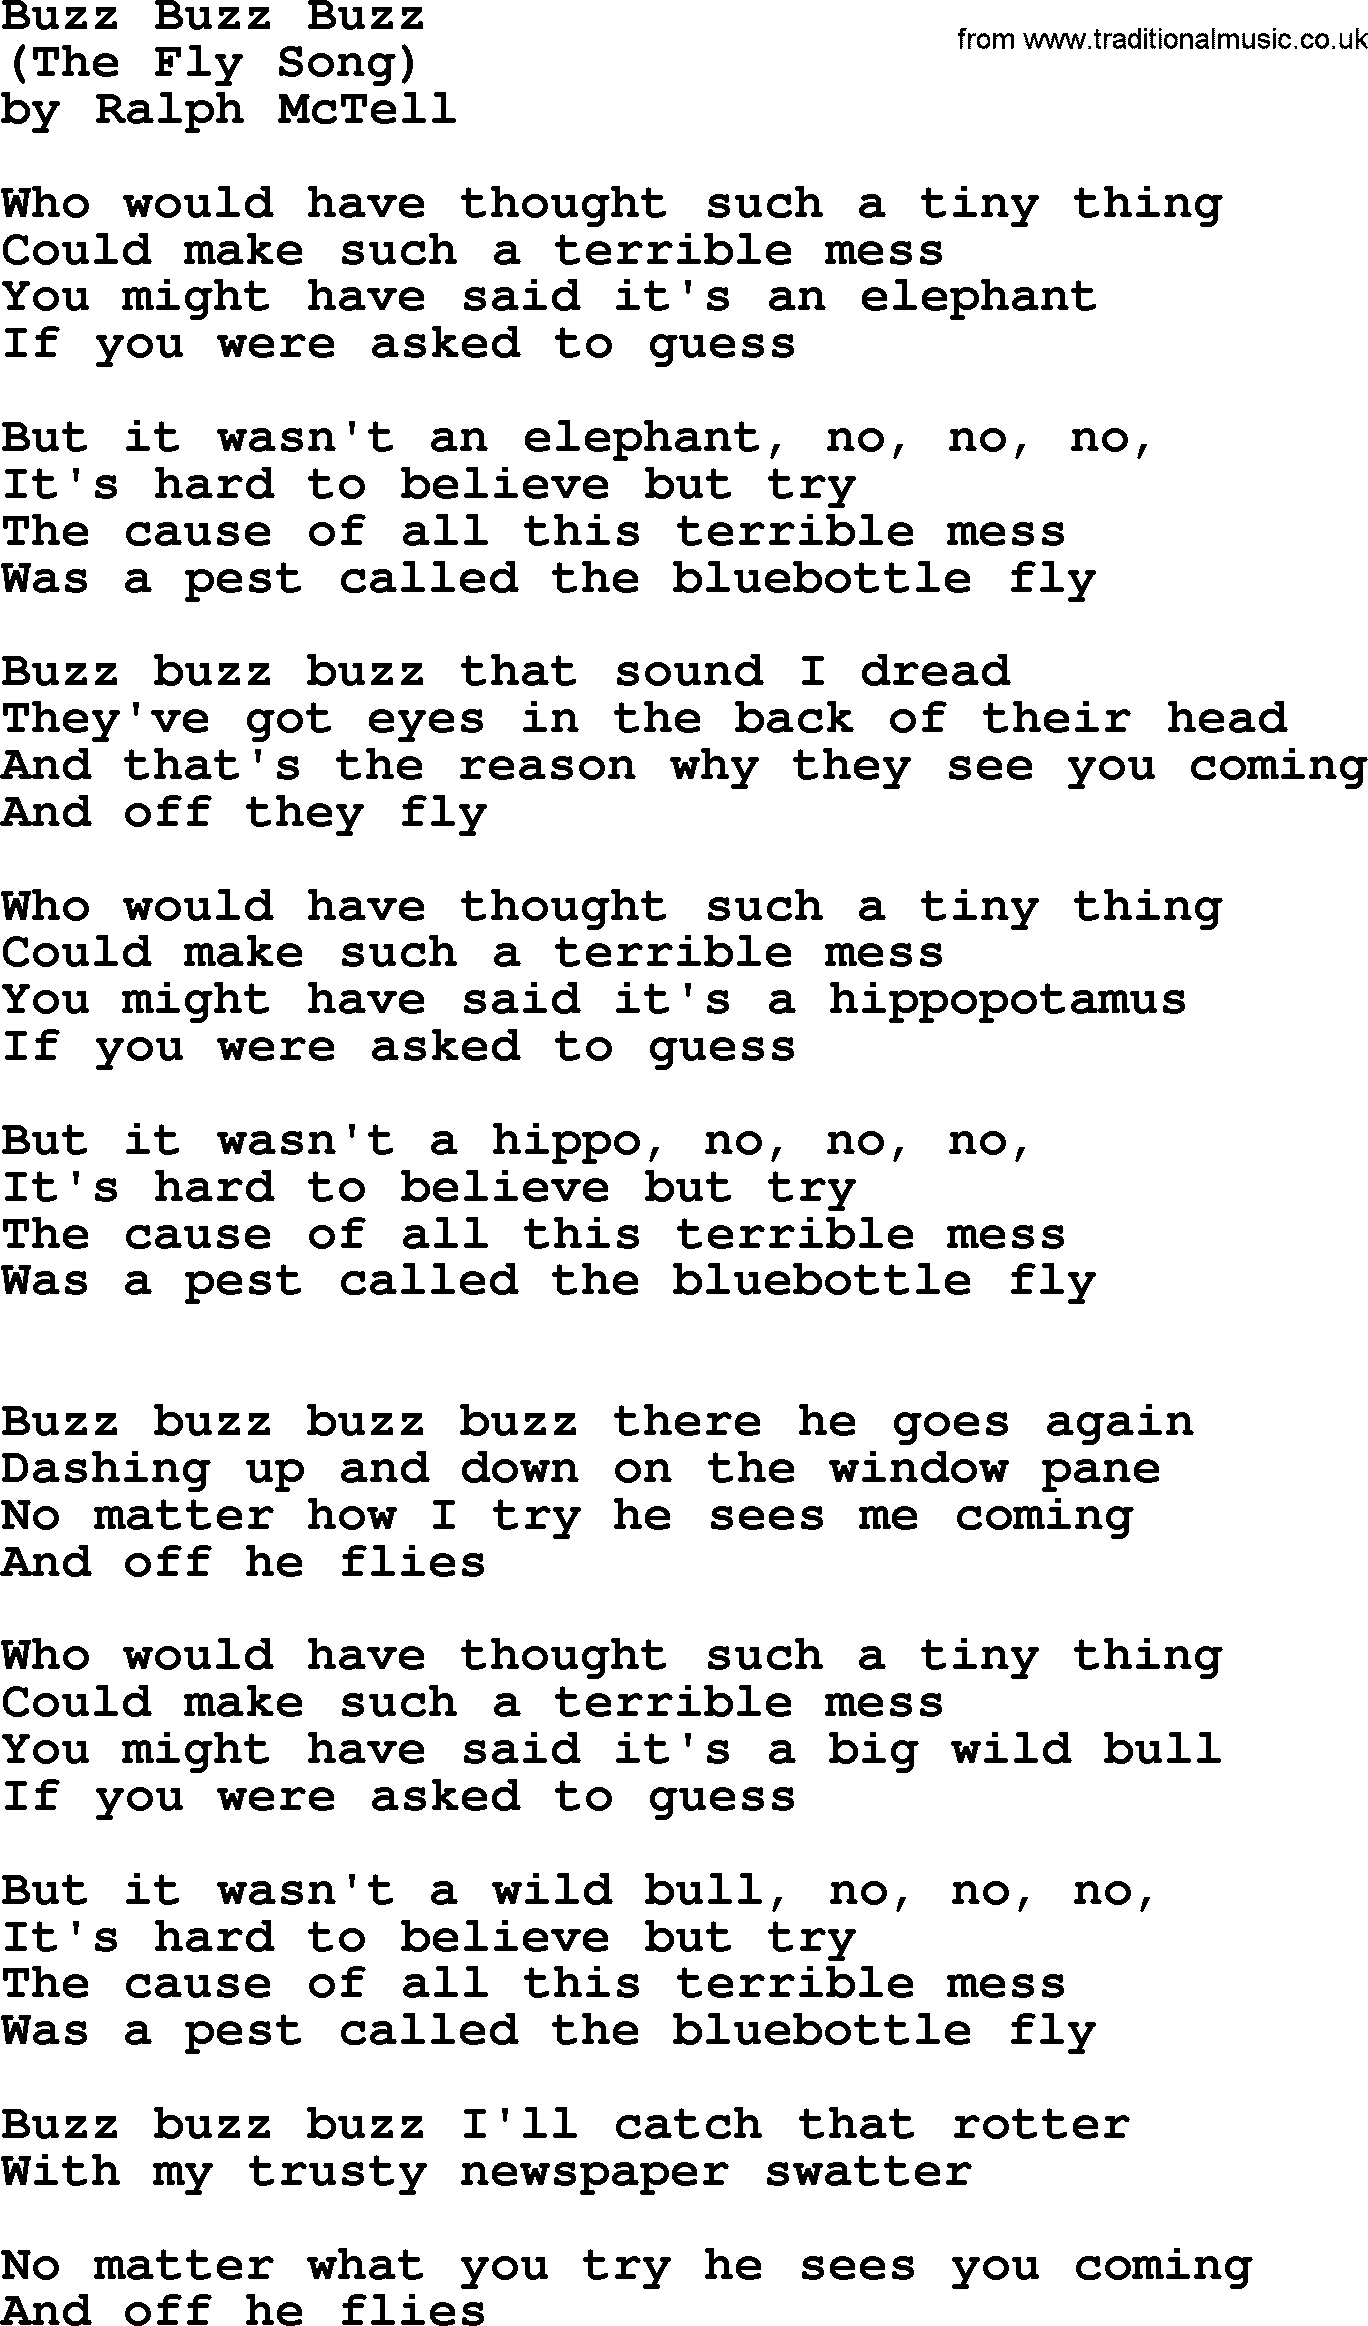 Ralph McTell Song: Buzz Buzz Buzz, lyrics